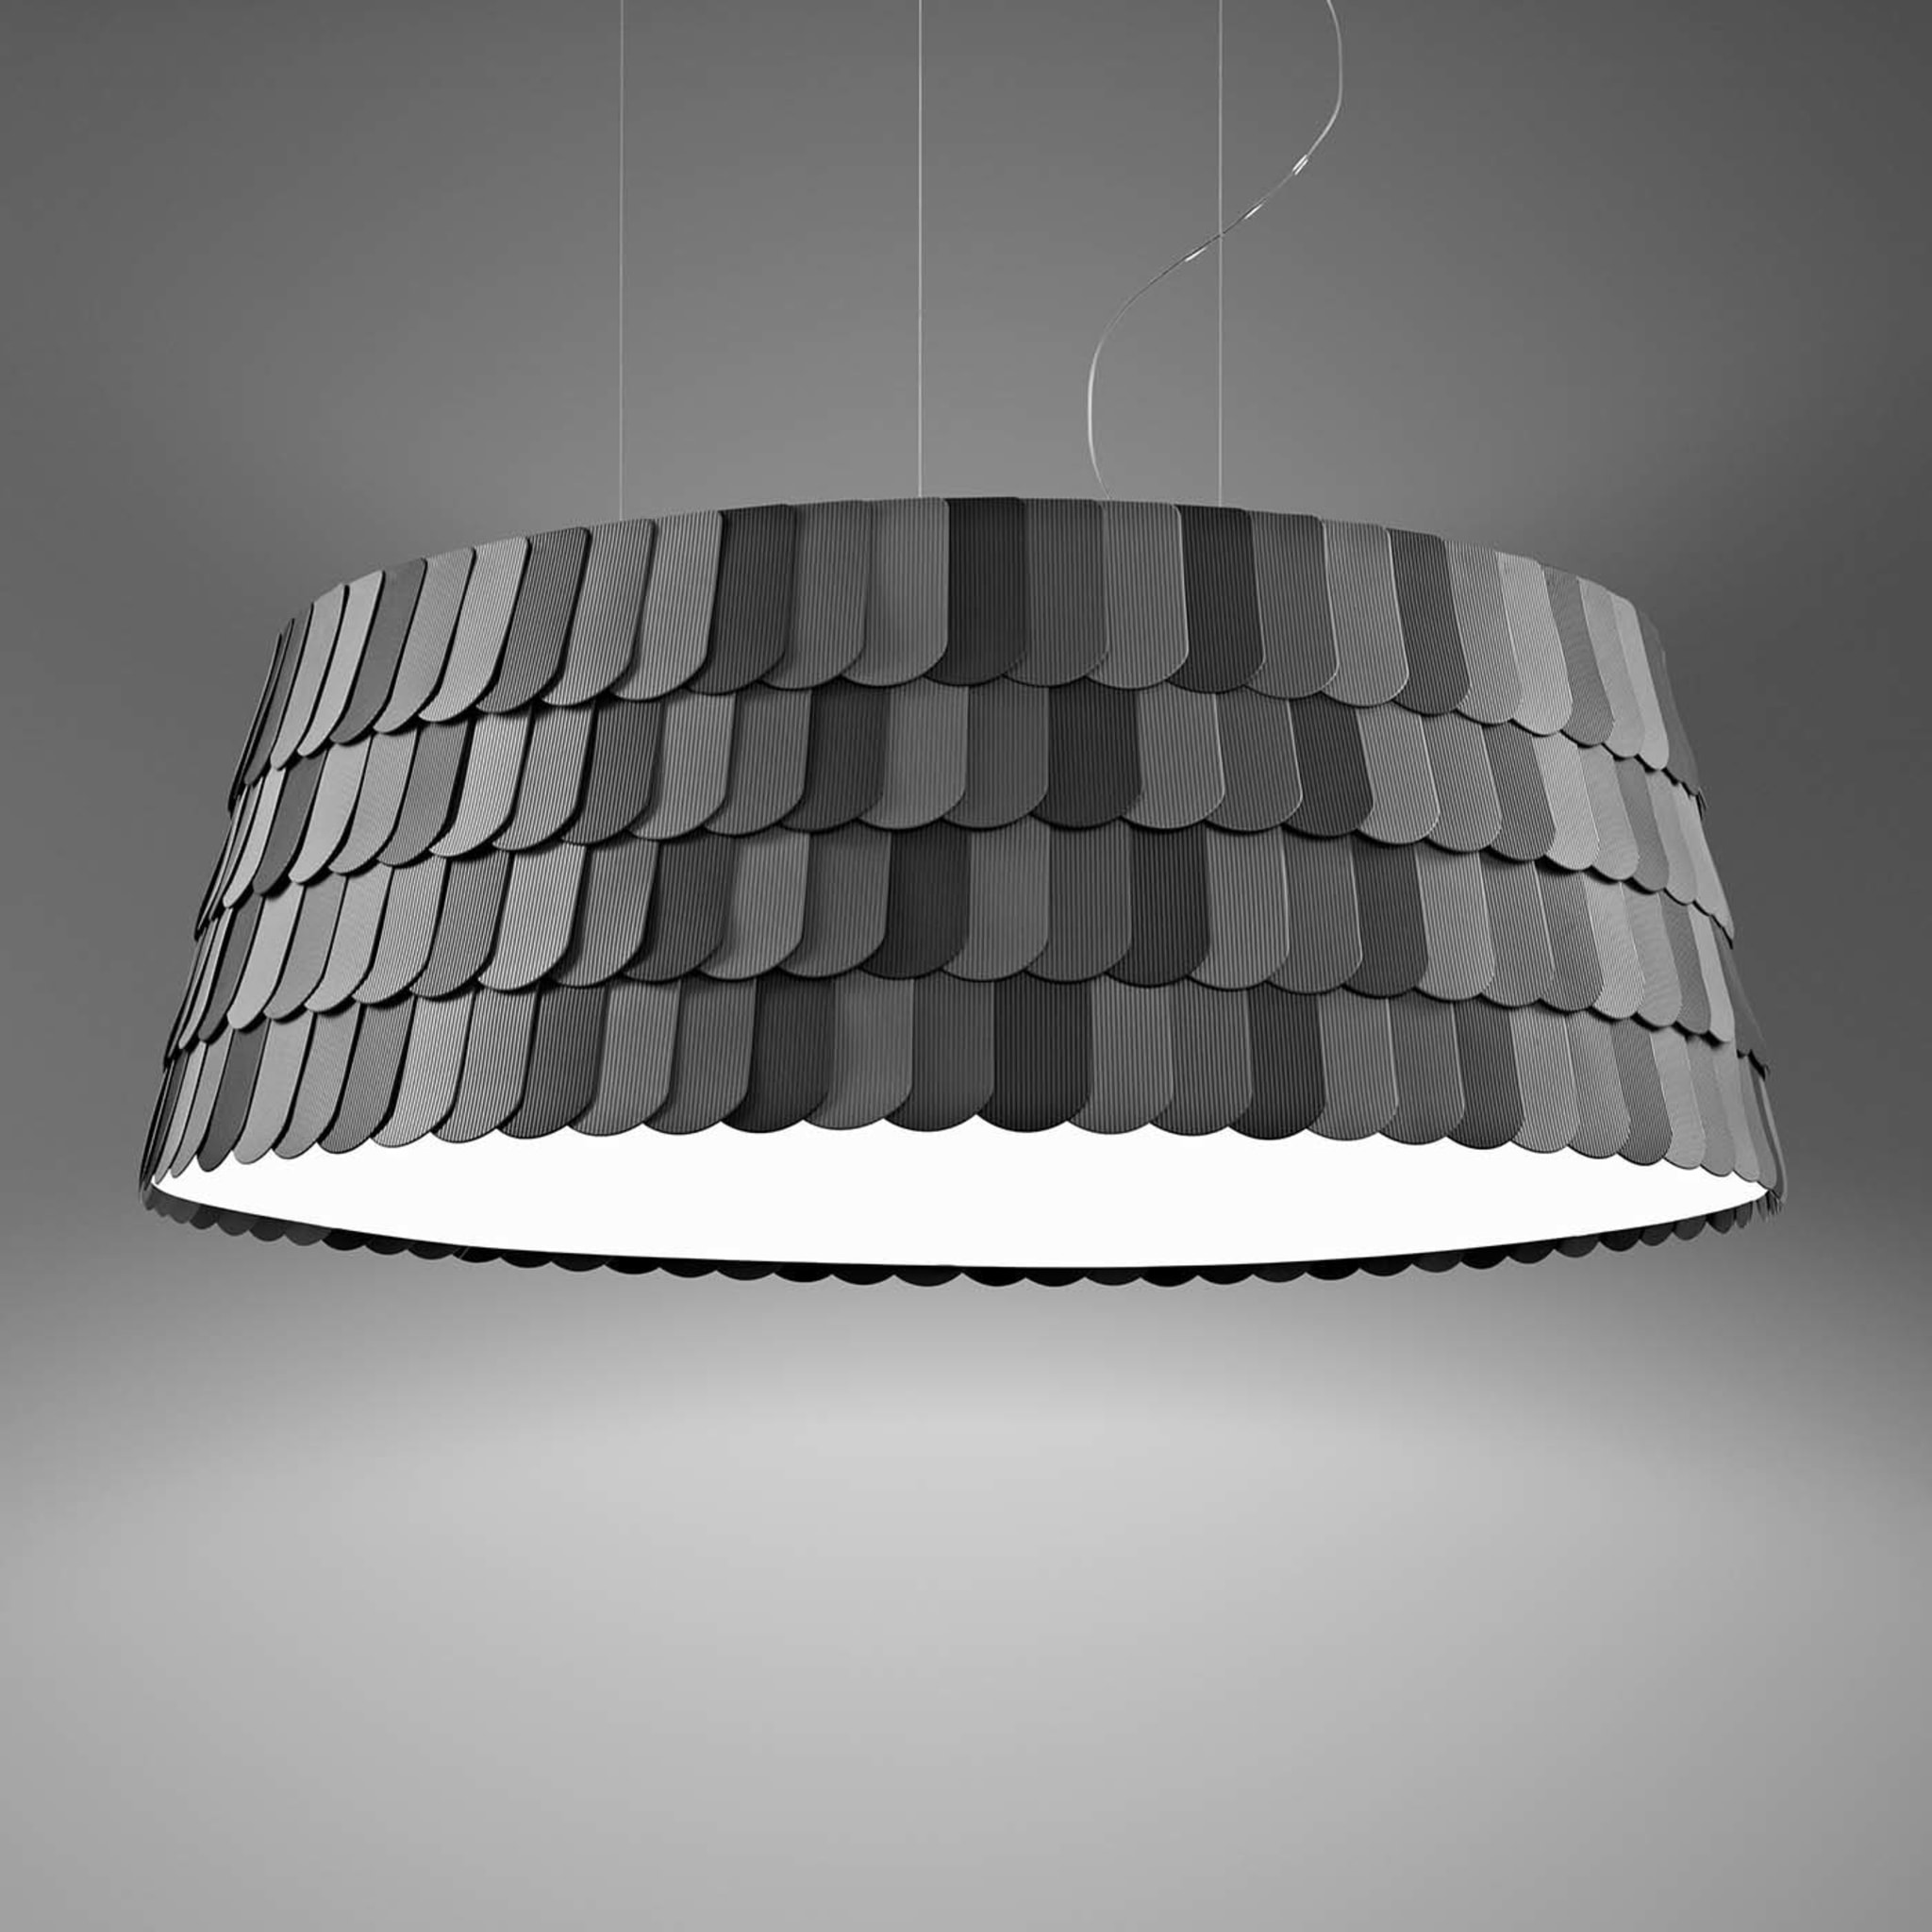 Lampe suspendue Roofer Gray de Benjamin Hubert - Vue alternative 1